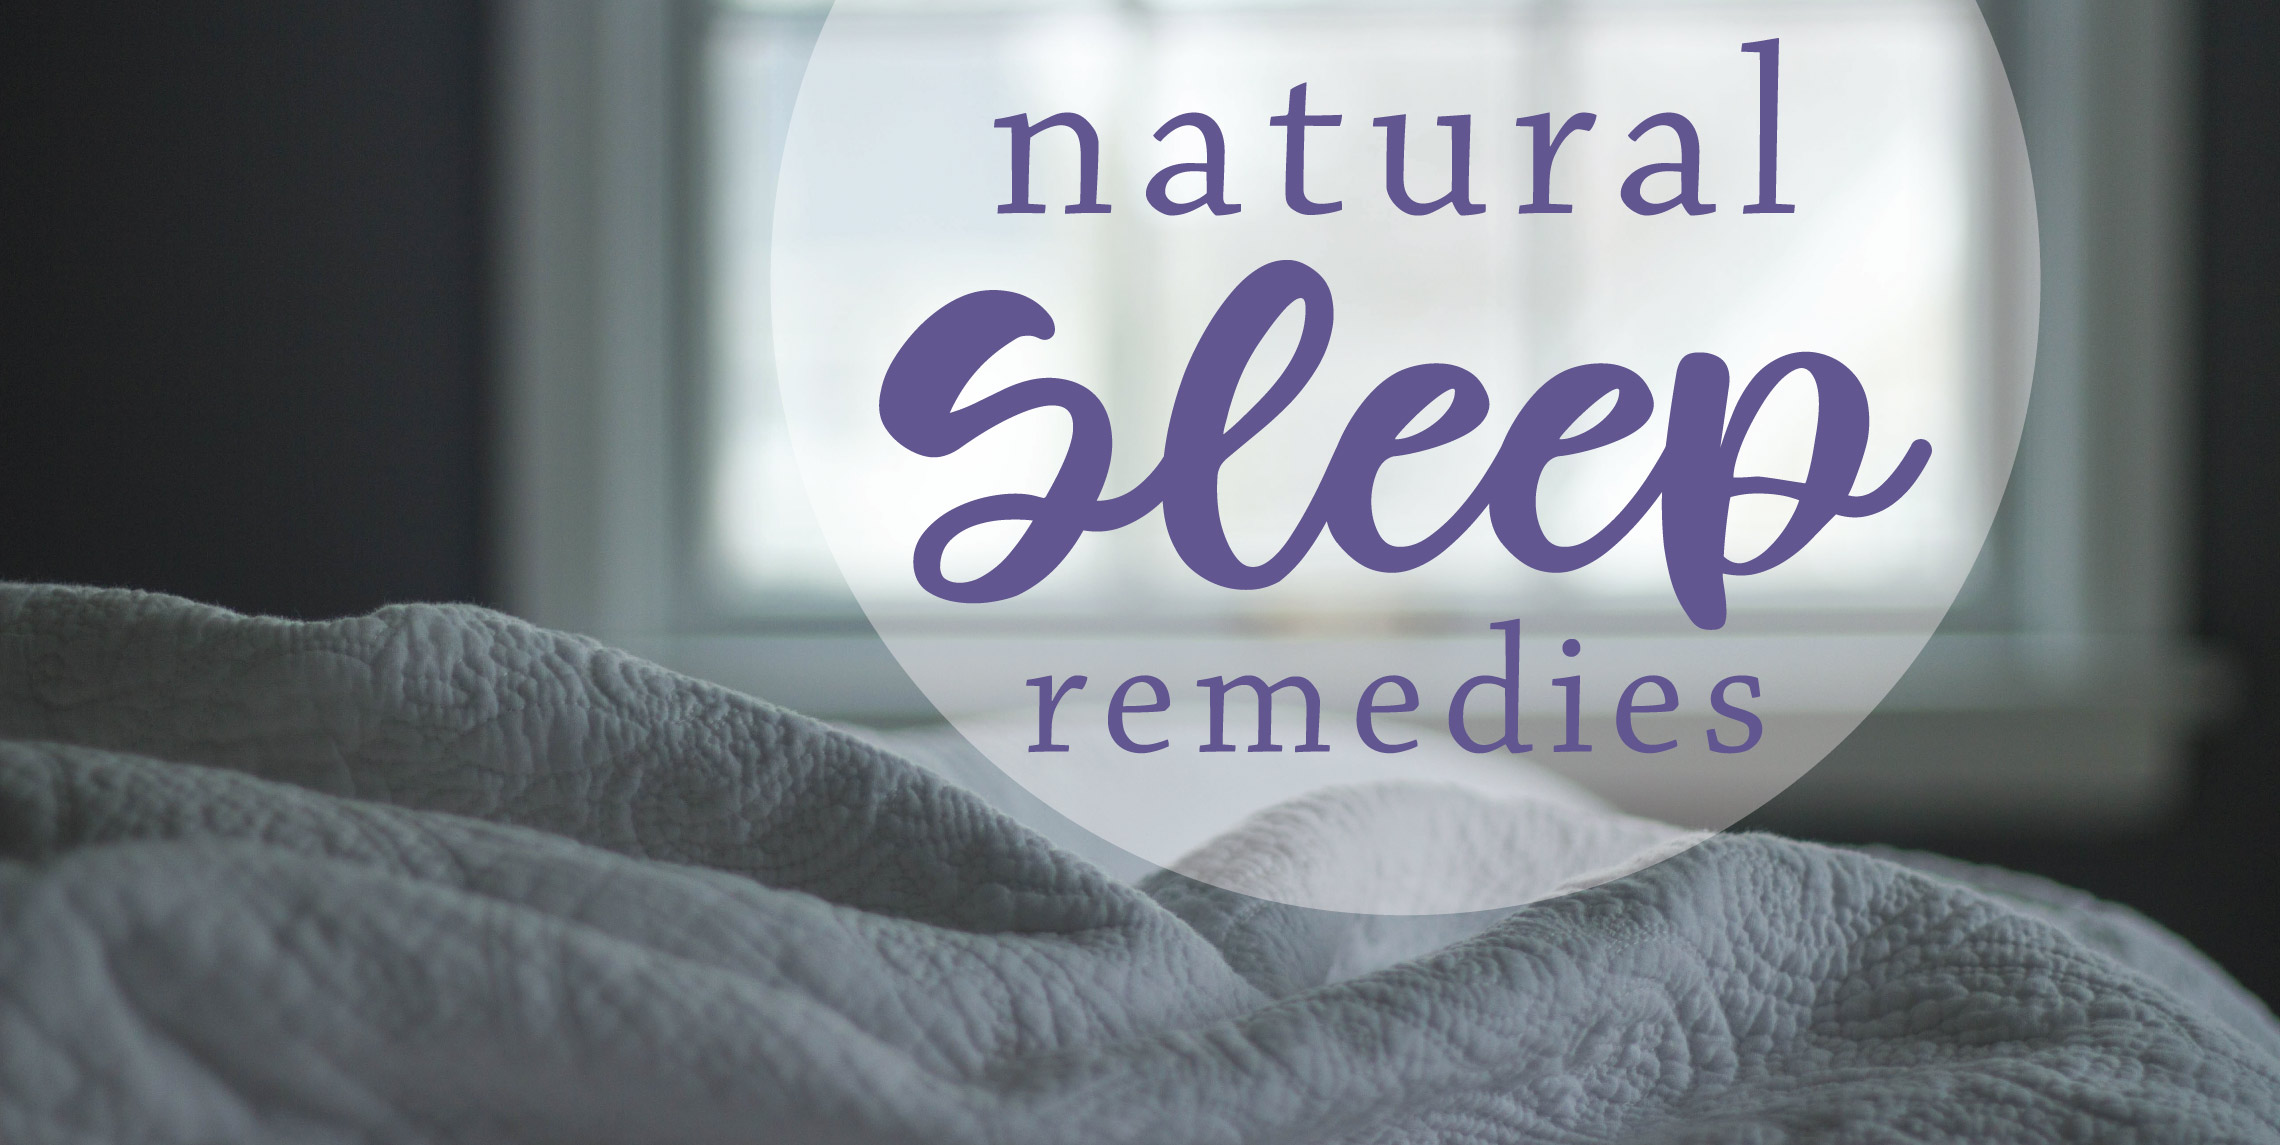 Natural Sleep remedies